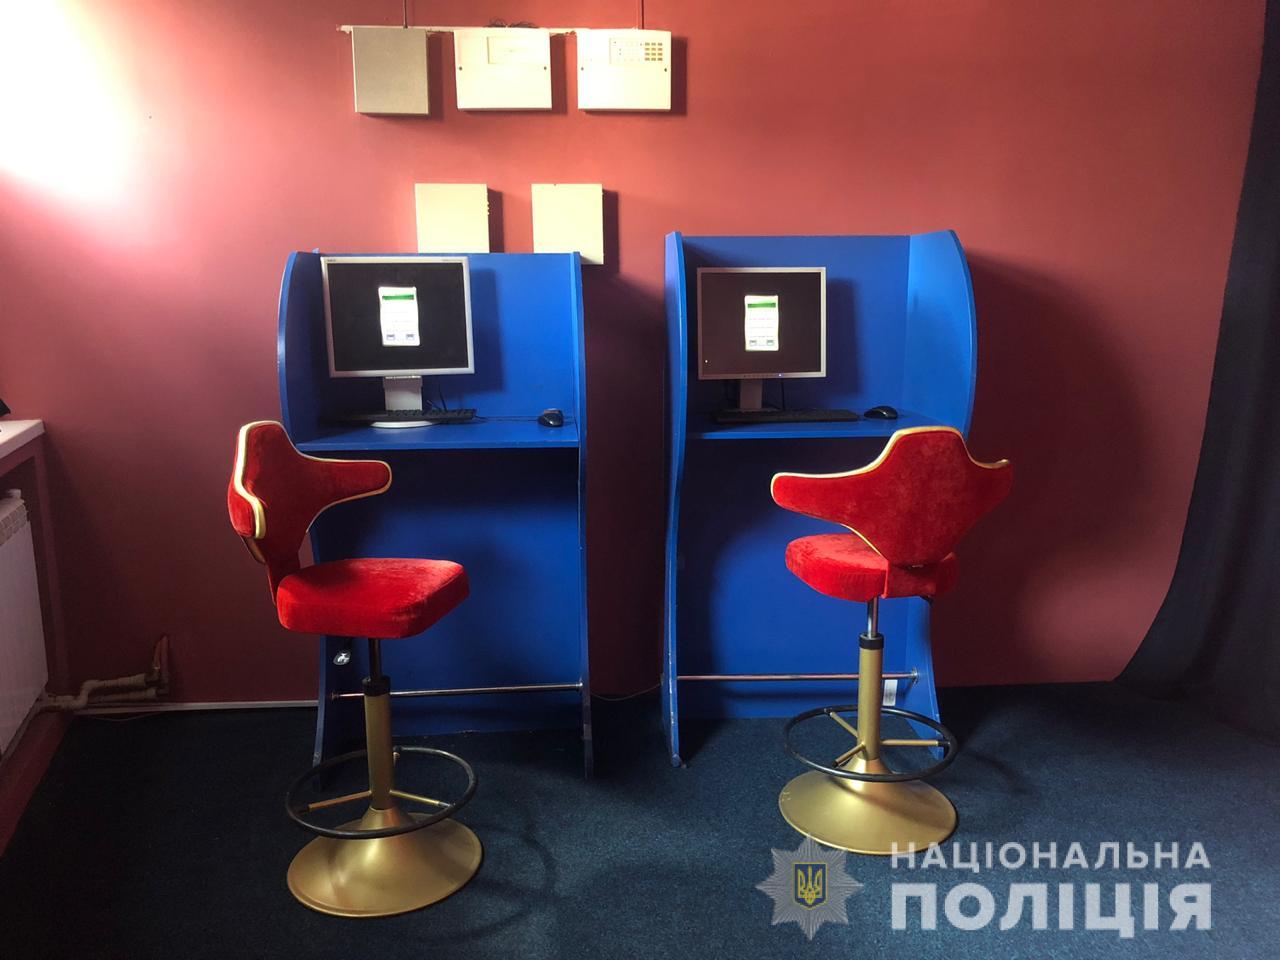  На Київщині поліція накрила мережу з дев’яти гральних залів